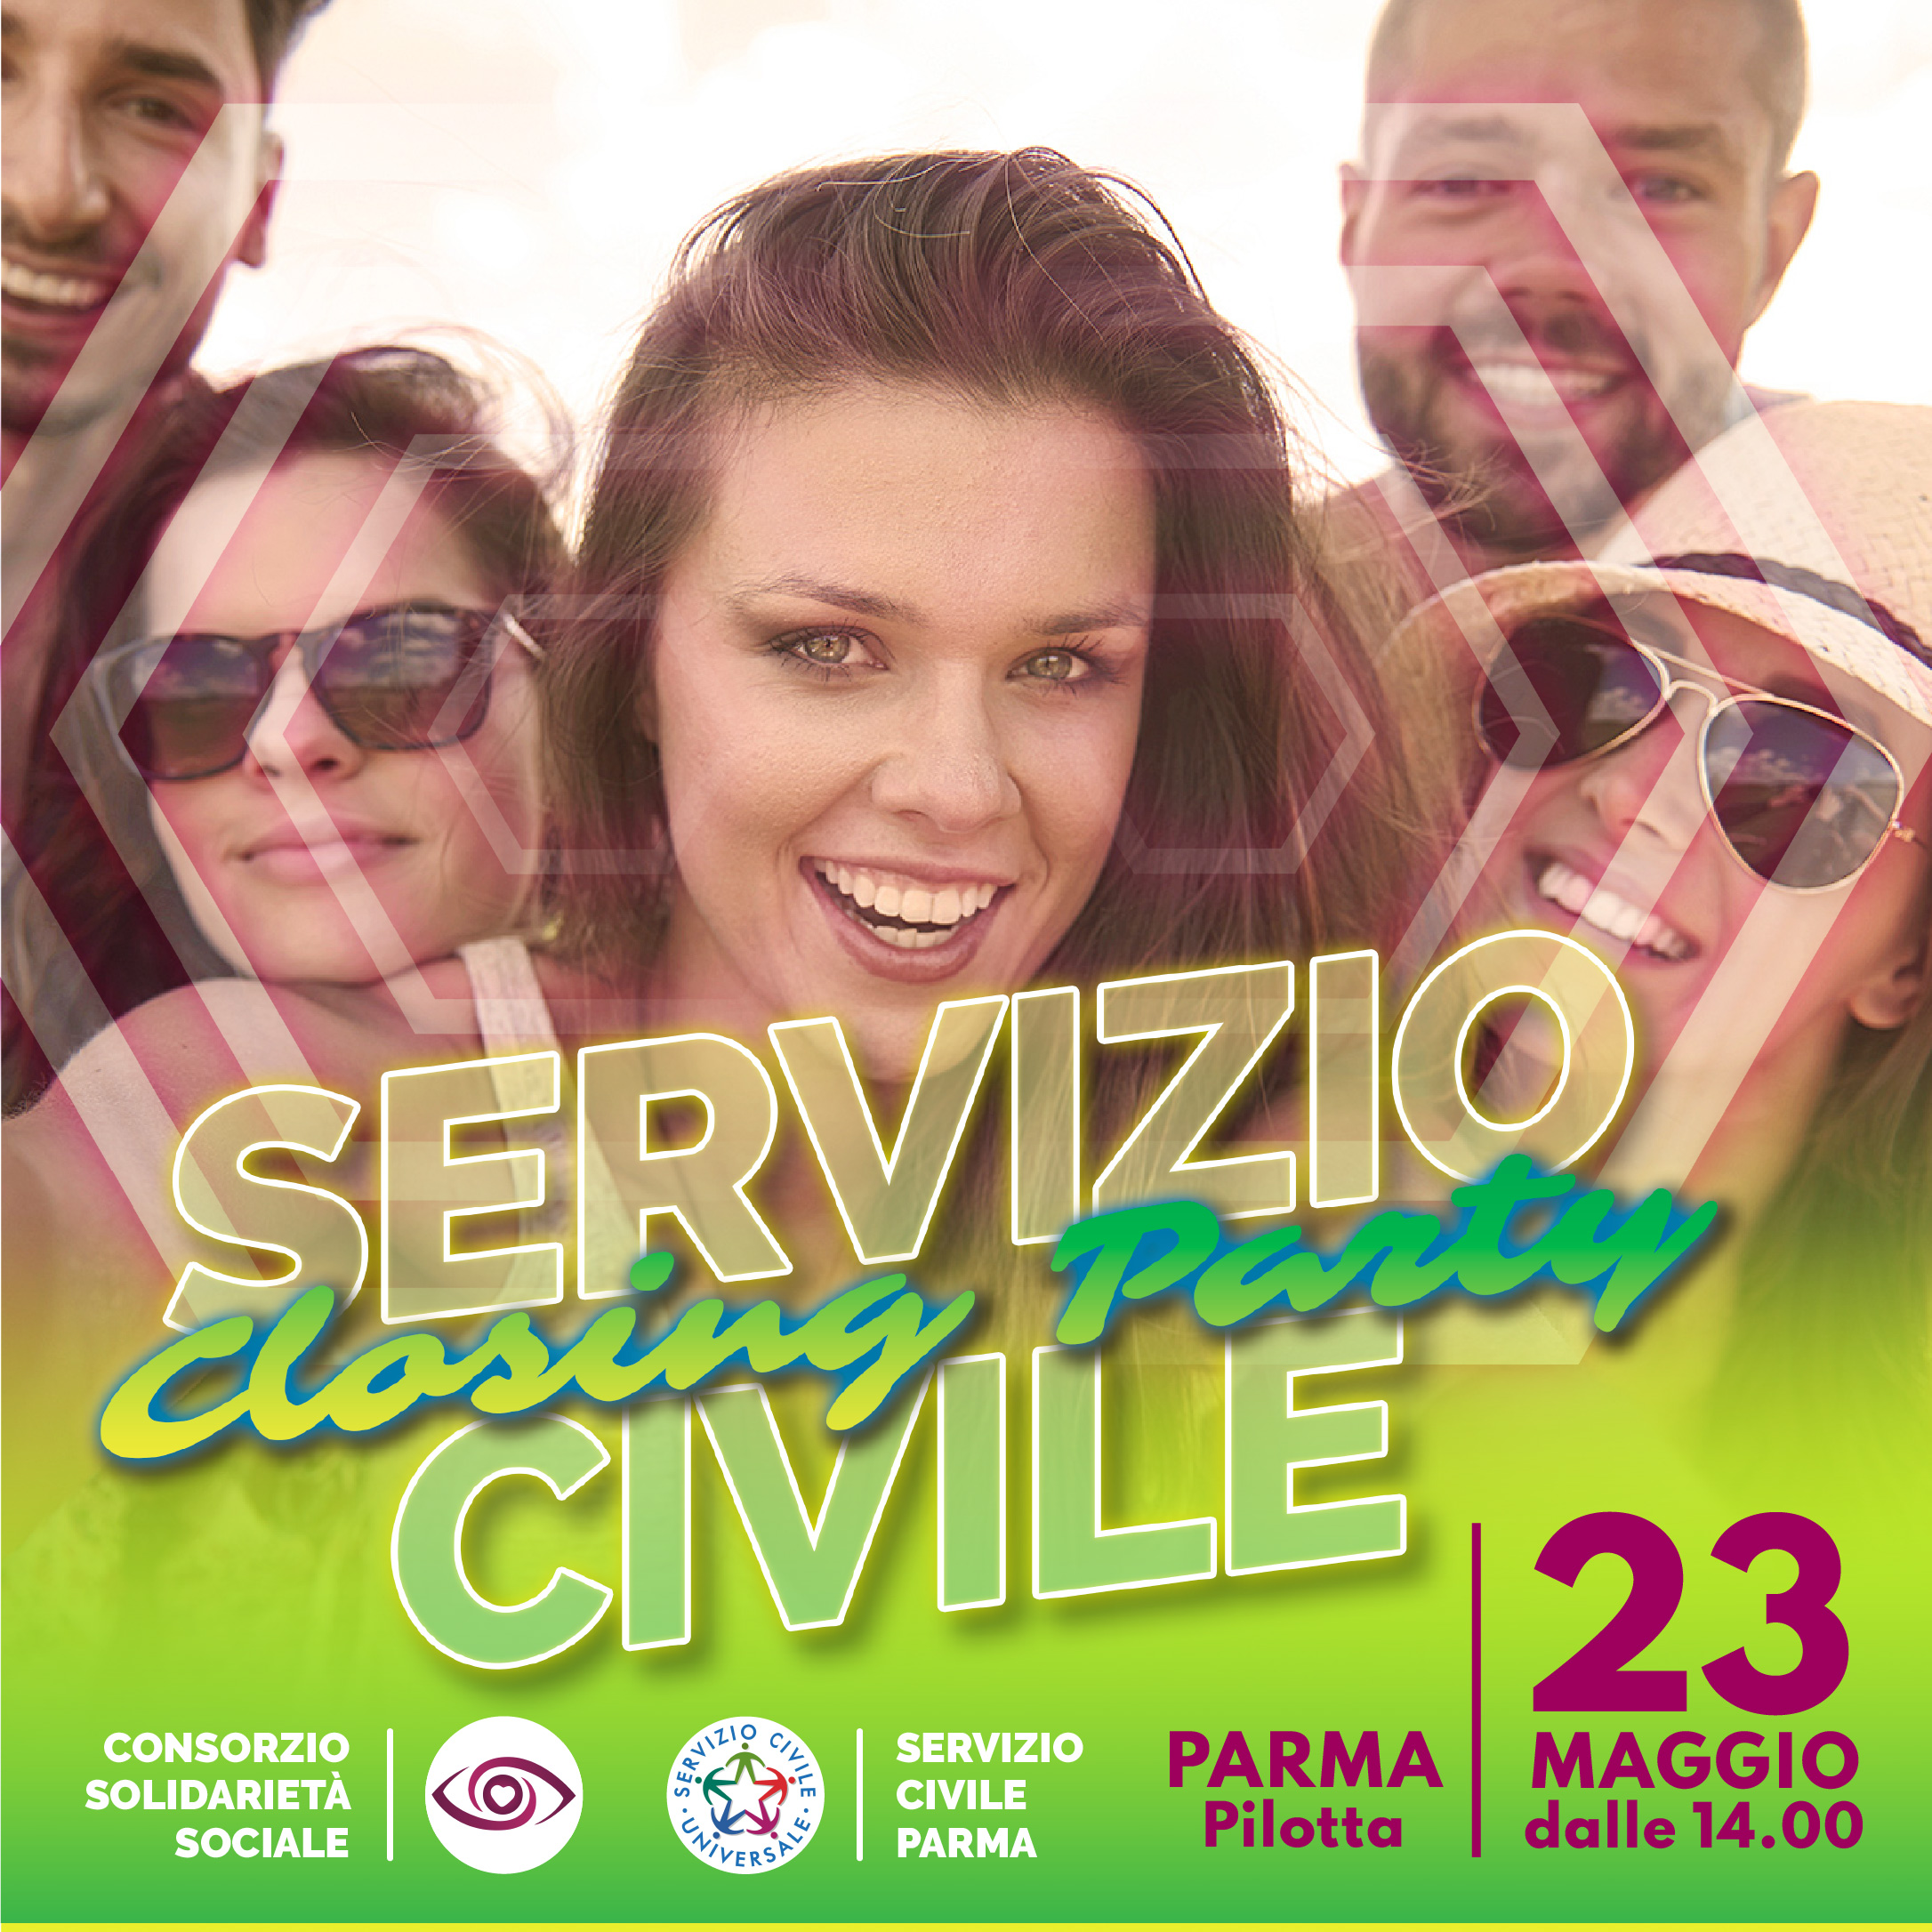 https://www.serviziocivileparma.it/web/servizio-civile-closing-party/